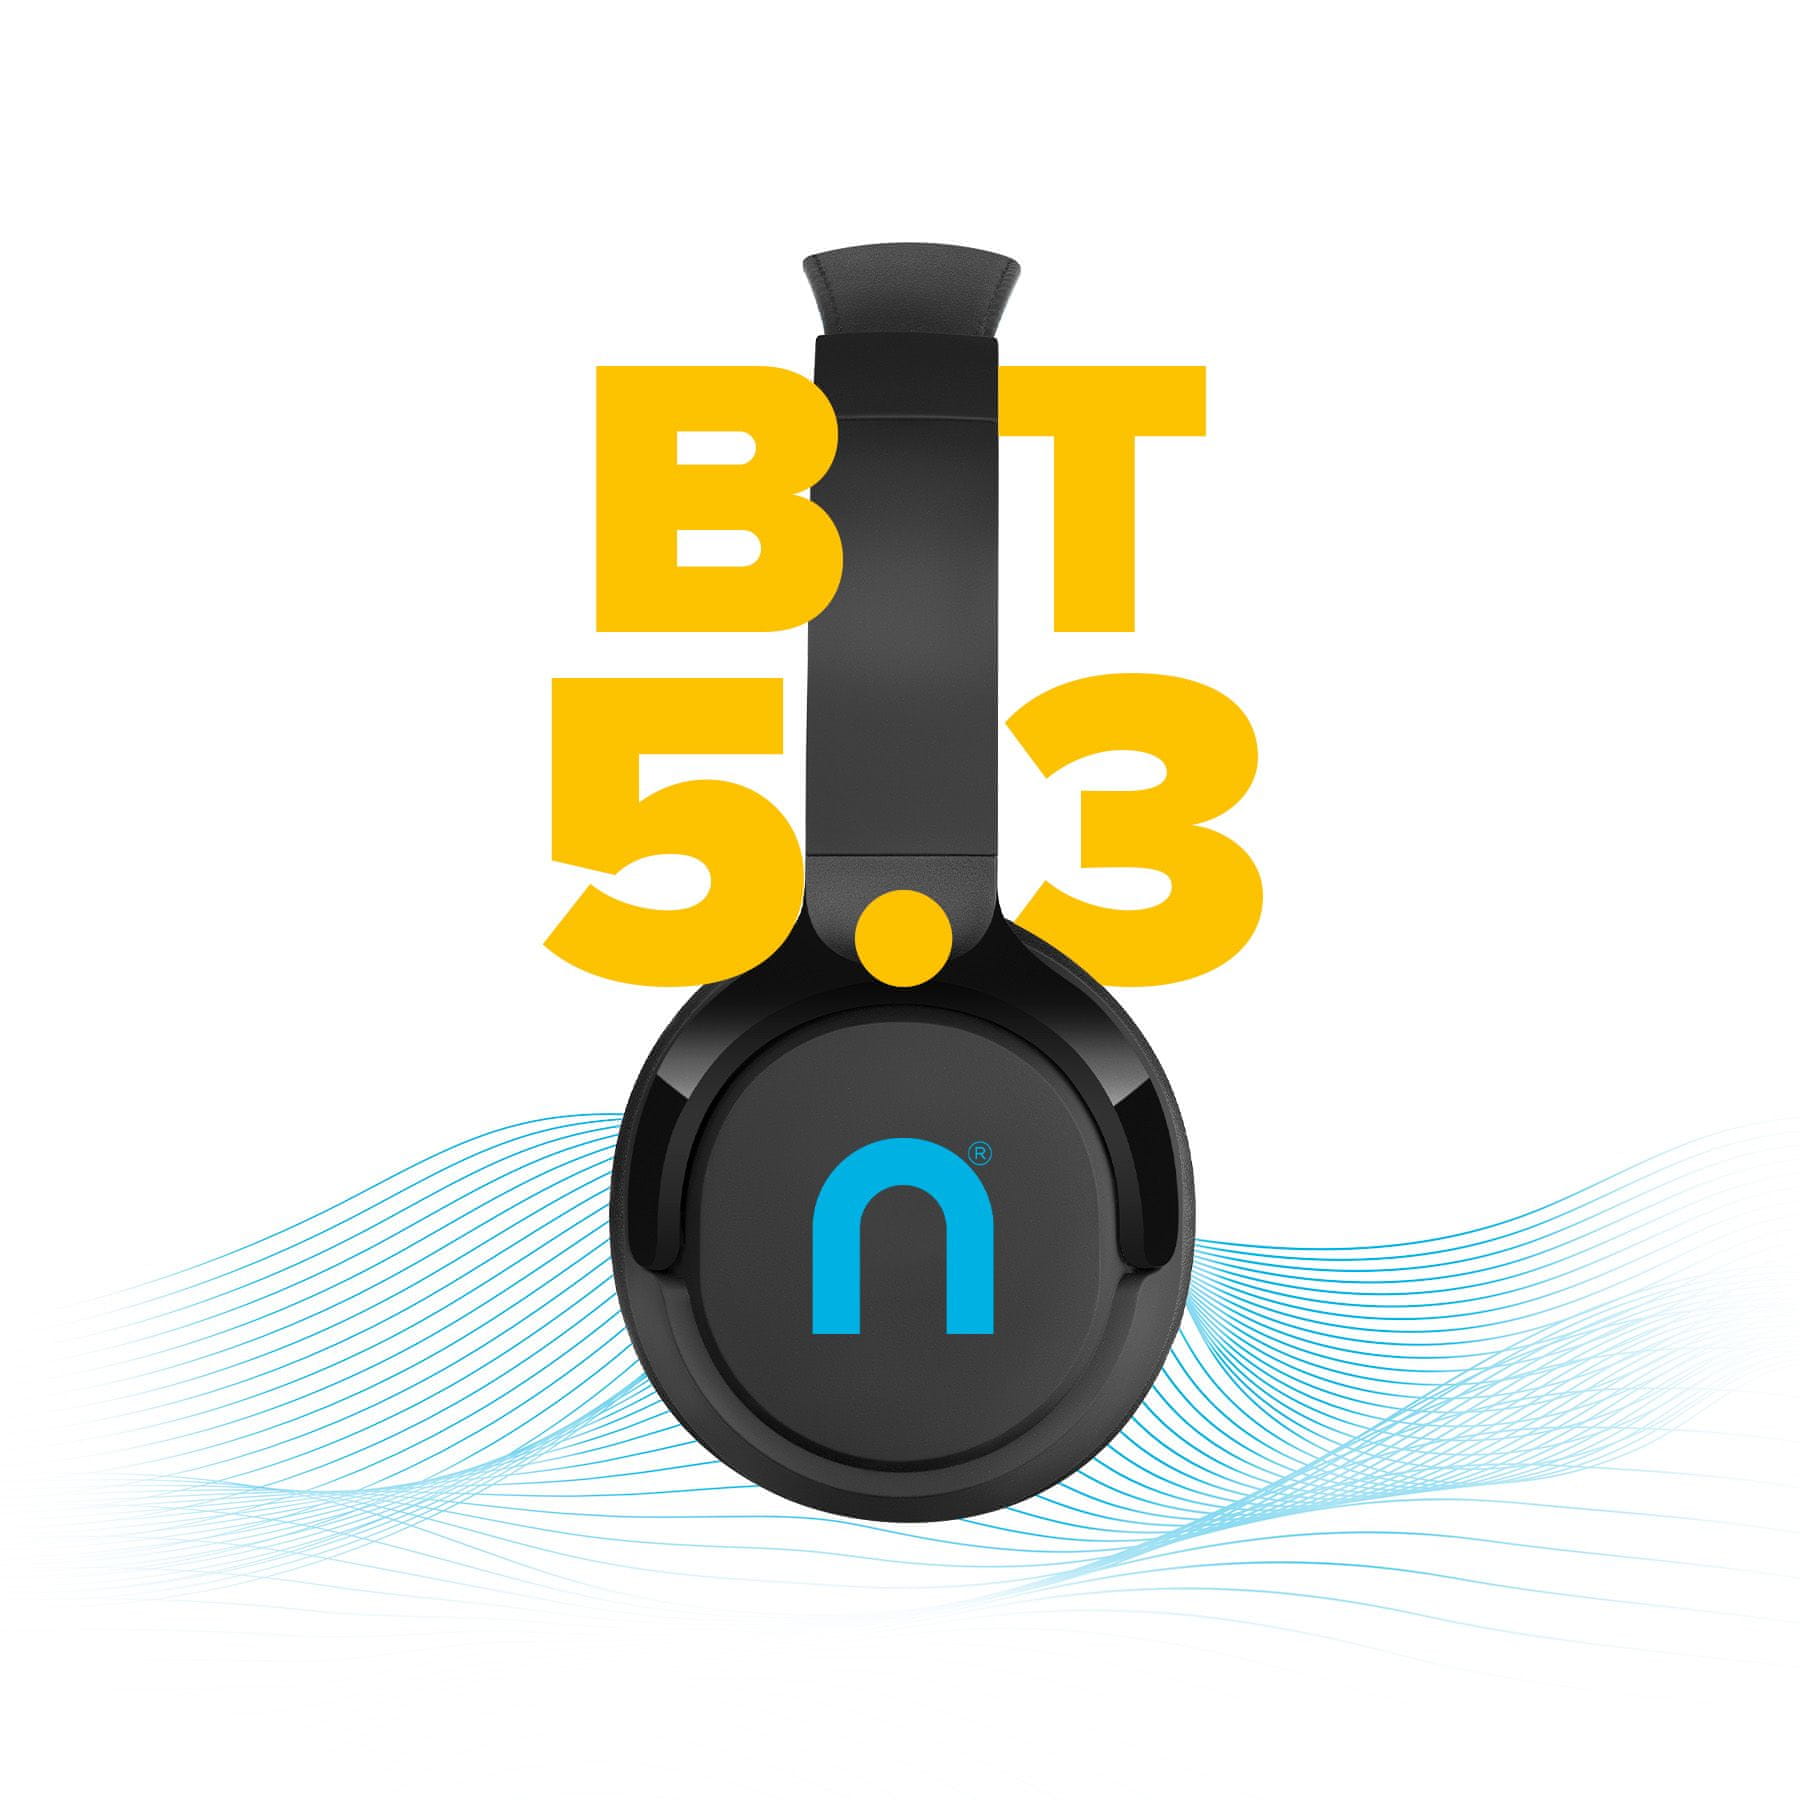  niceboy hive prodigy 3 max Bluetooth fejhallgató handsfree mikrofon alkalmazás ion hangszínszabályzó nagyszerű hangzás hosszú akkumulátor üzemidő hangvezérlés könnyű konstrukció 